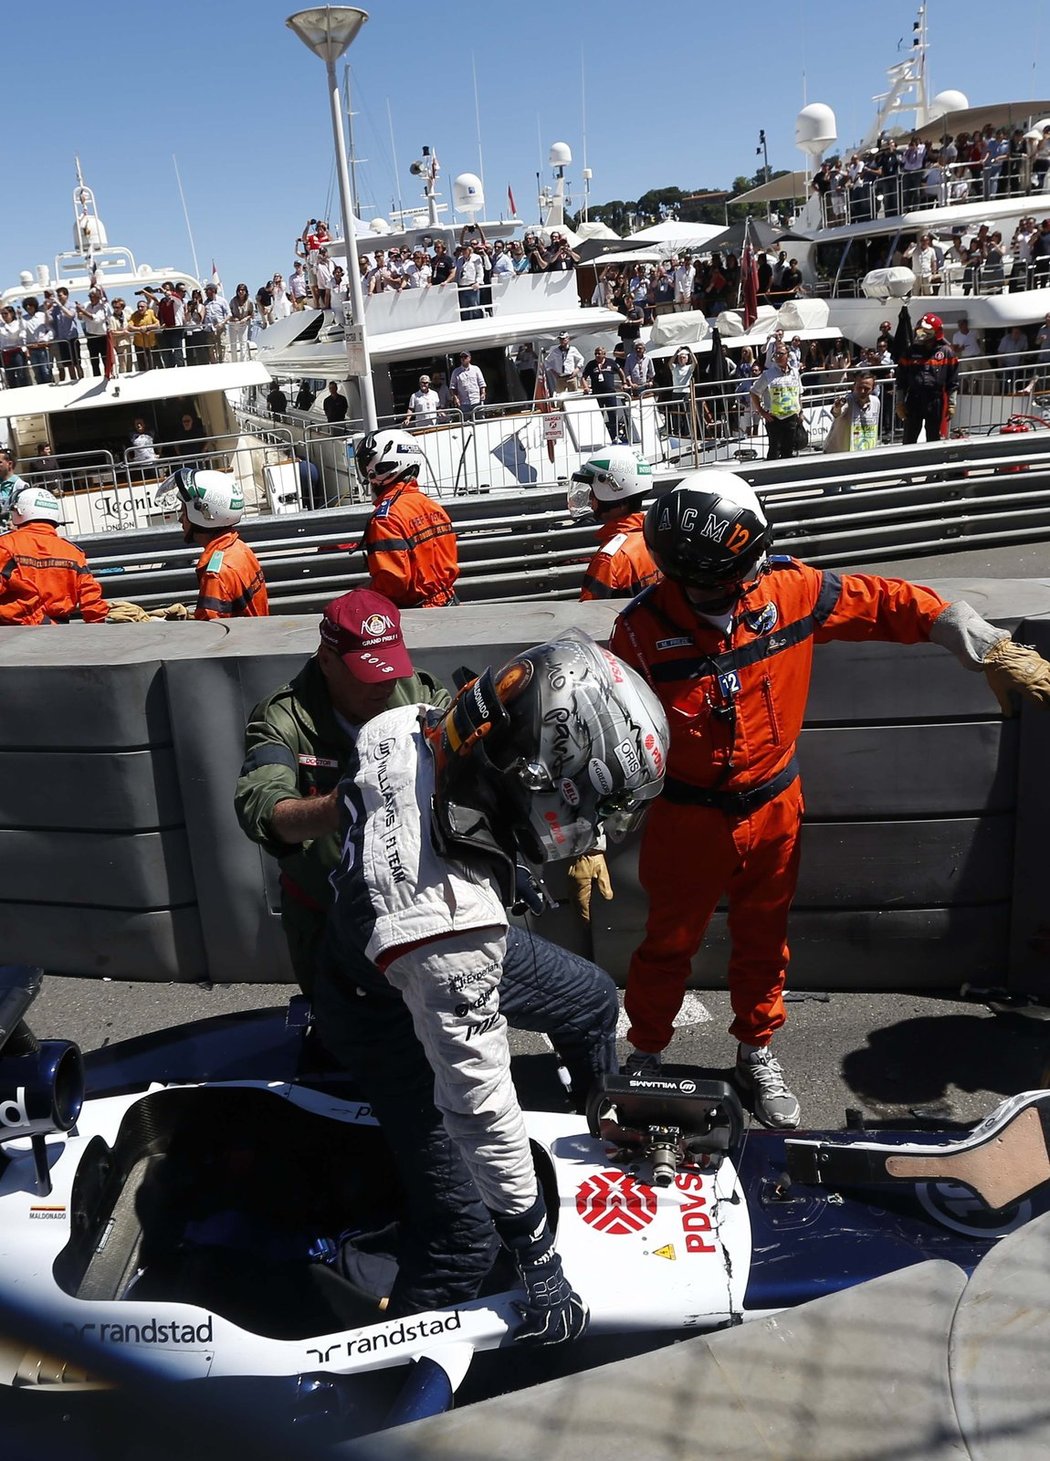 Otřesený Pastor Maldonado opouští svůj monopost po ošklivé bouračce ve Velké ceně Monaka